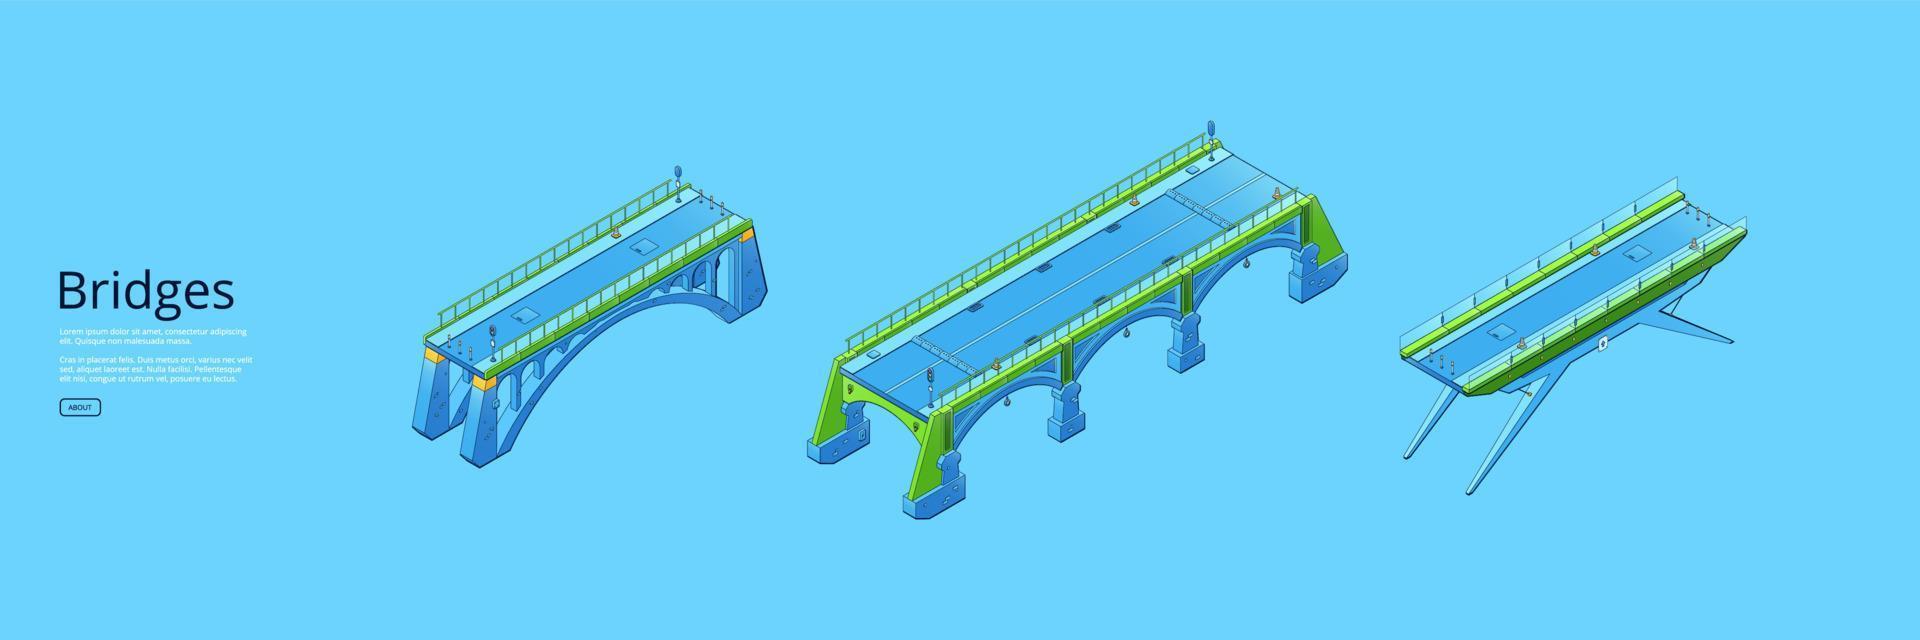 broar isometrisk baner med stad arkitektur vektor